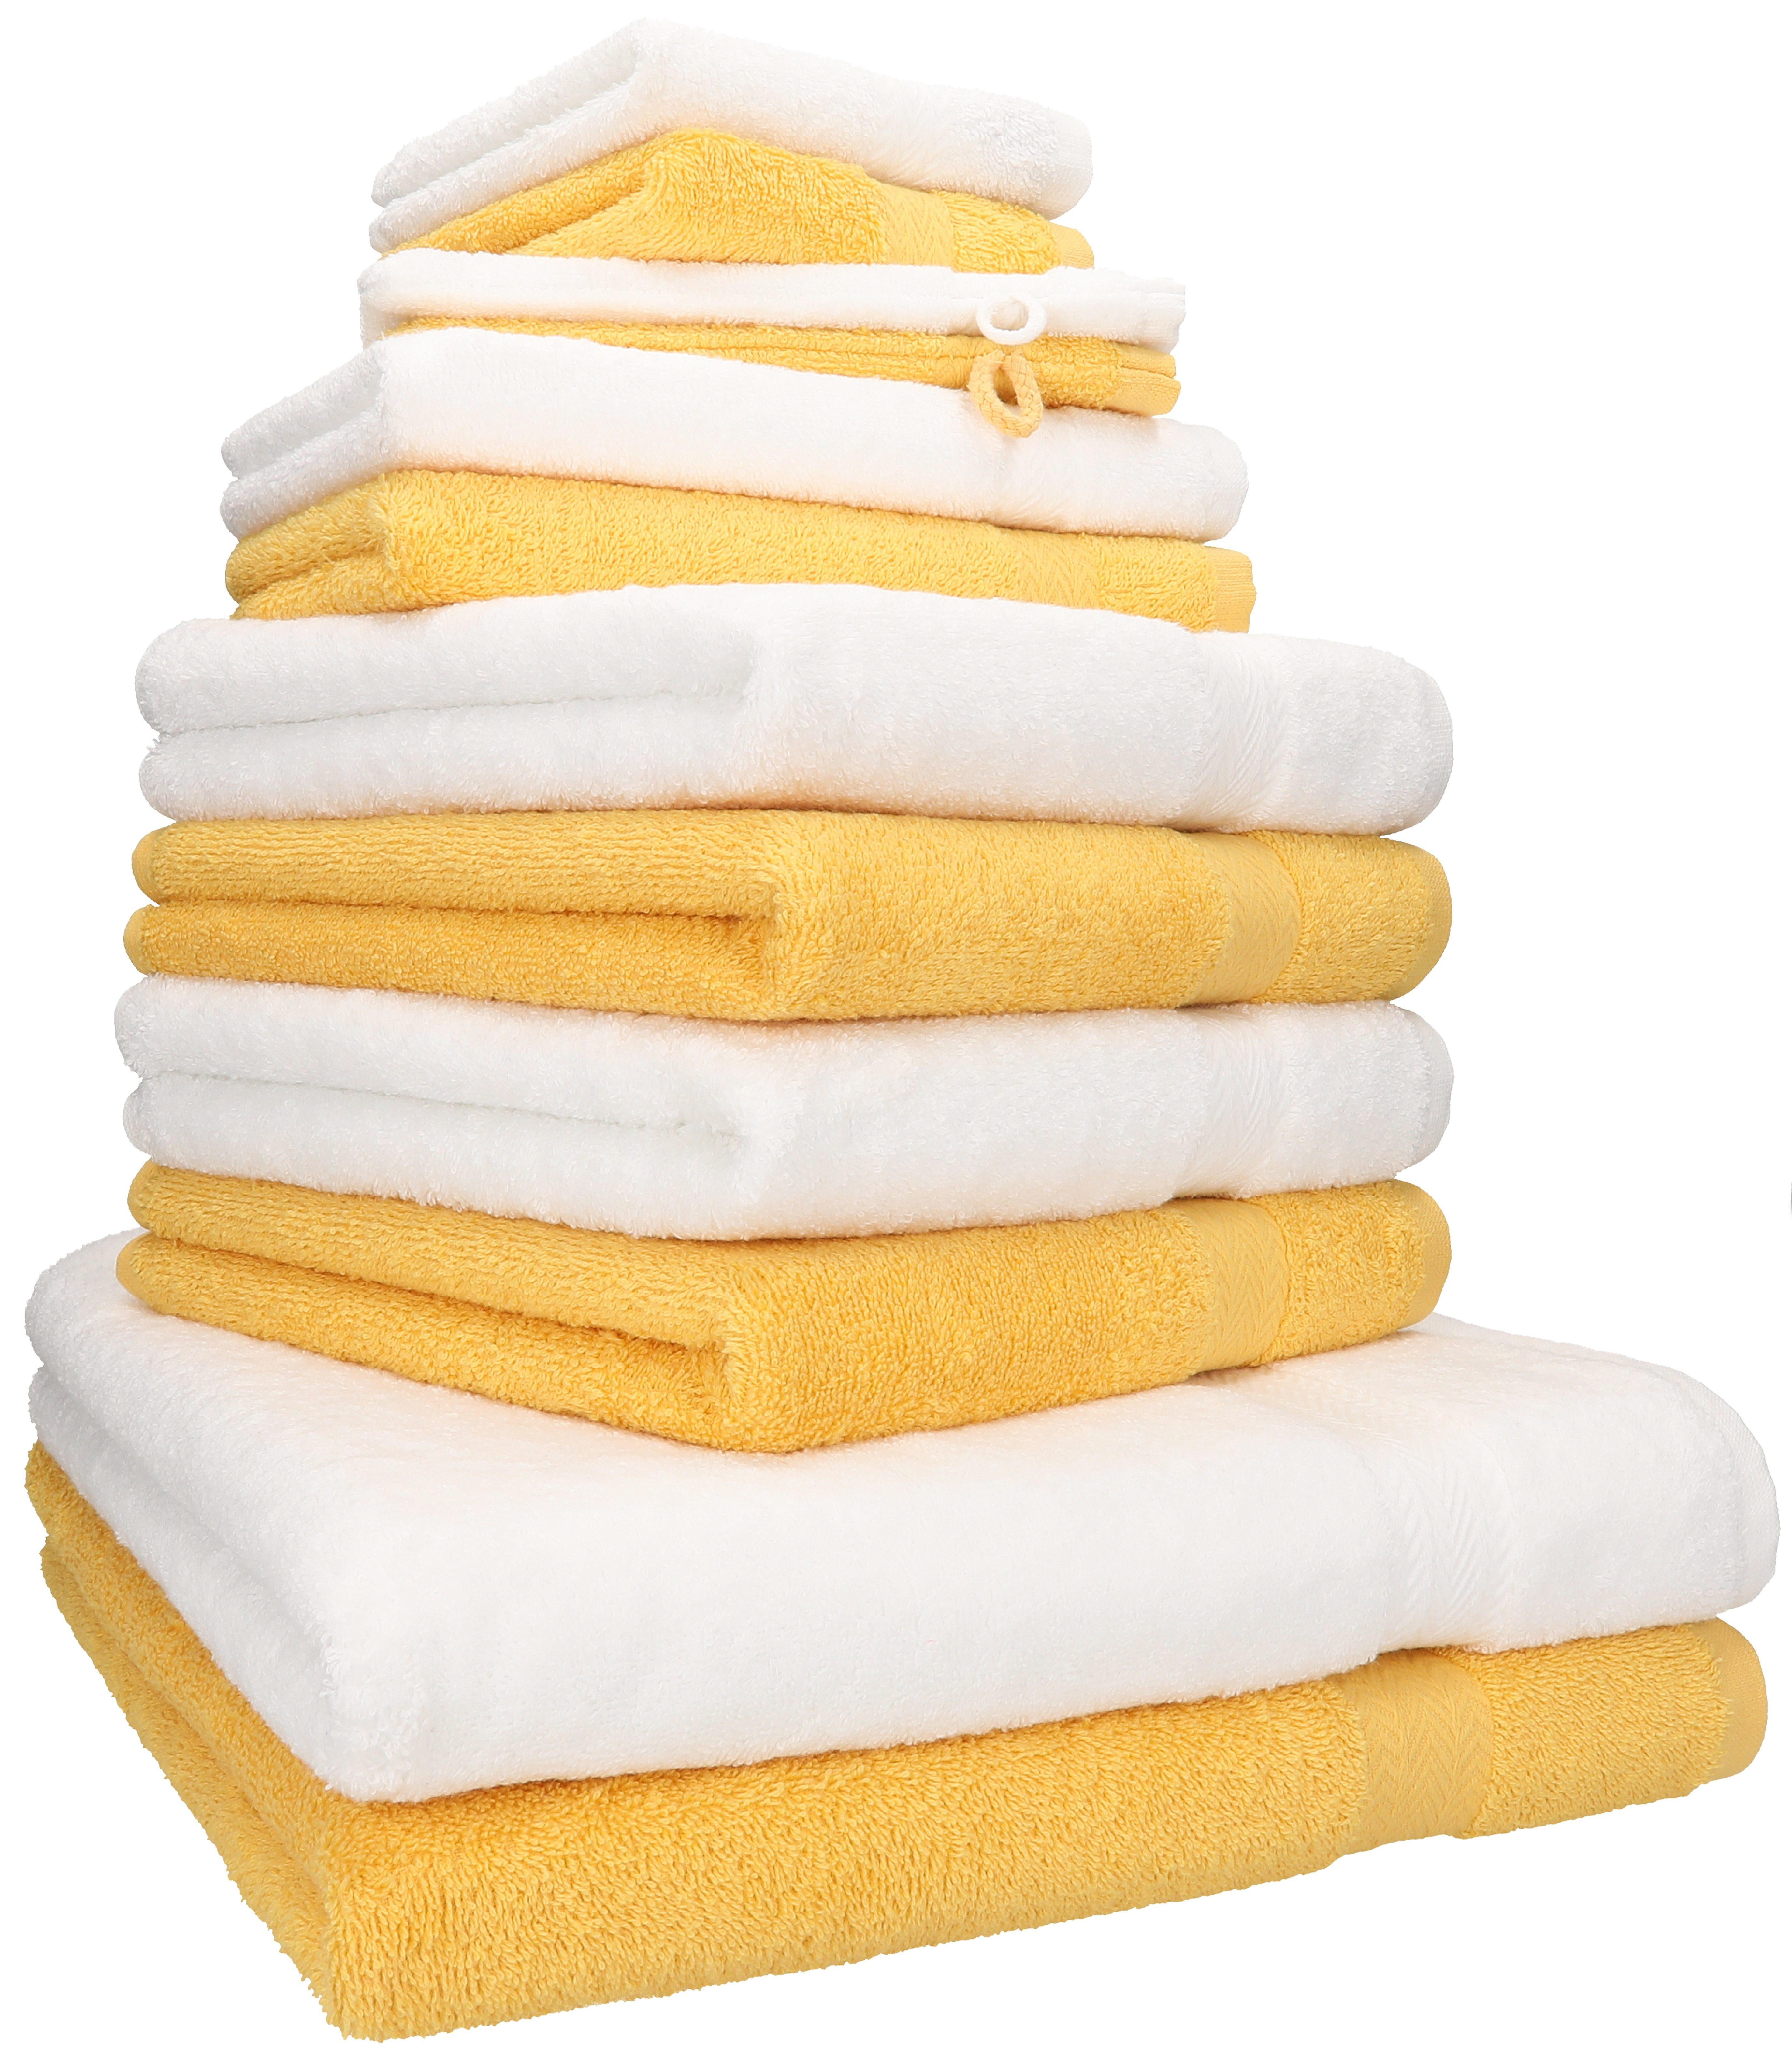 Betz Handtuch Set 12-TLG. Handtuch Set Premium Farbe weiß/honiggelb, 100% Baumwolle, (12-tlg)